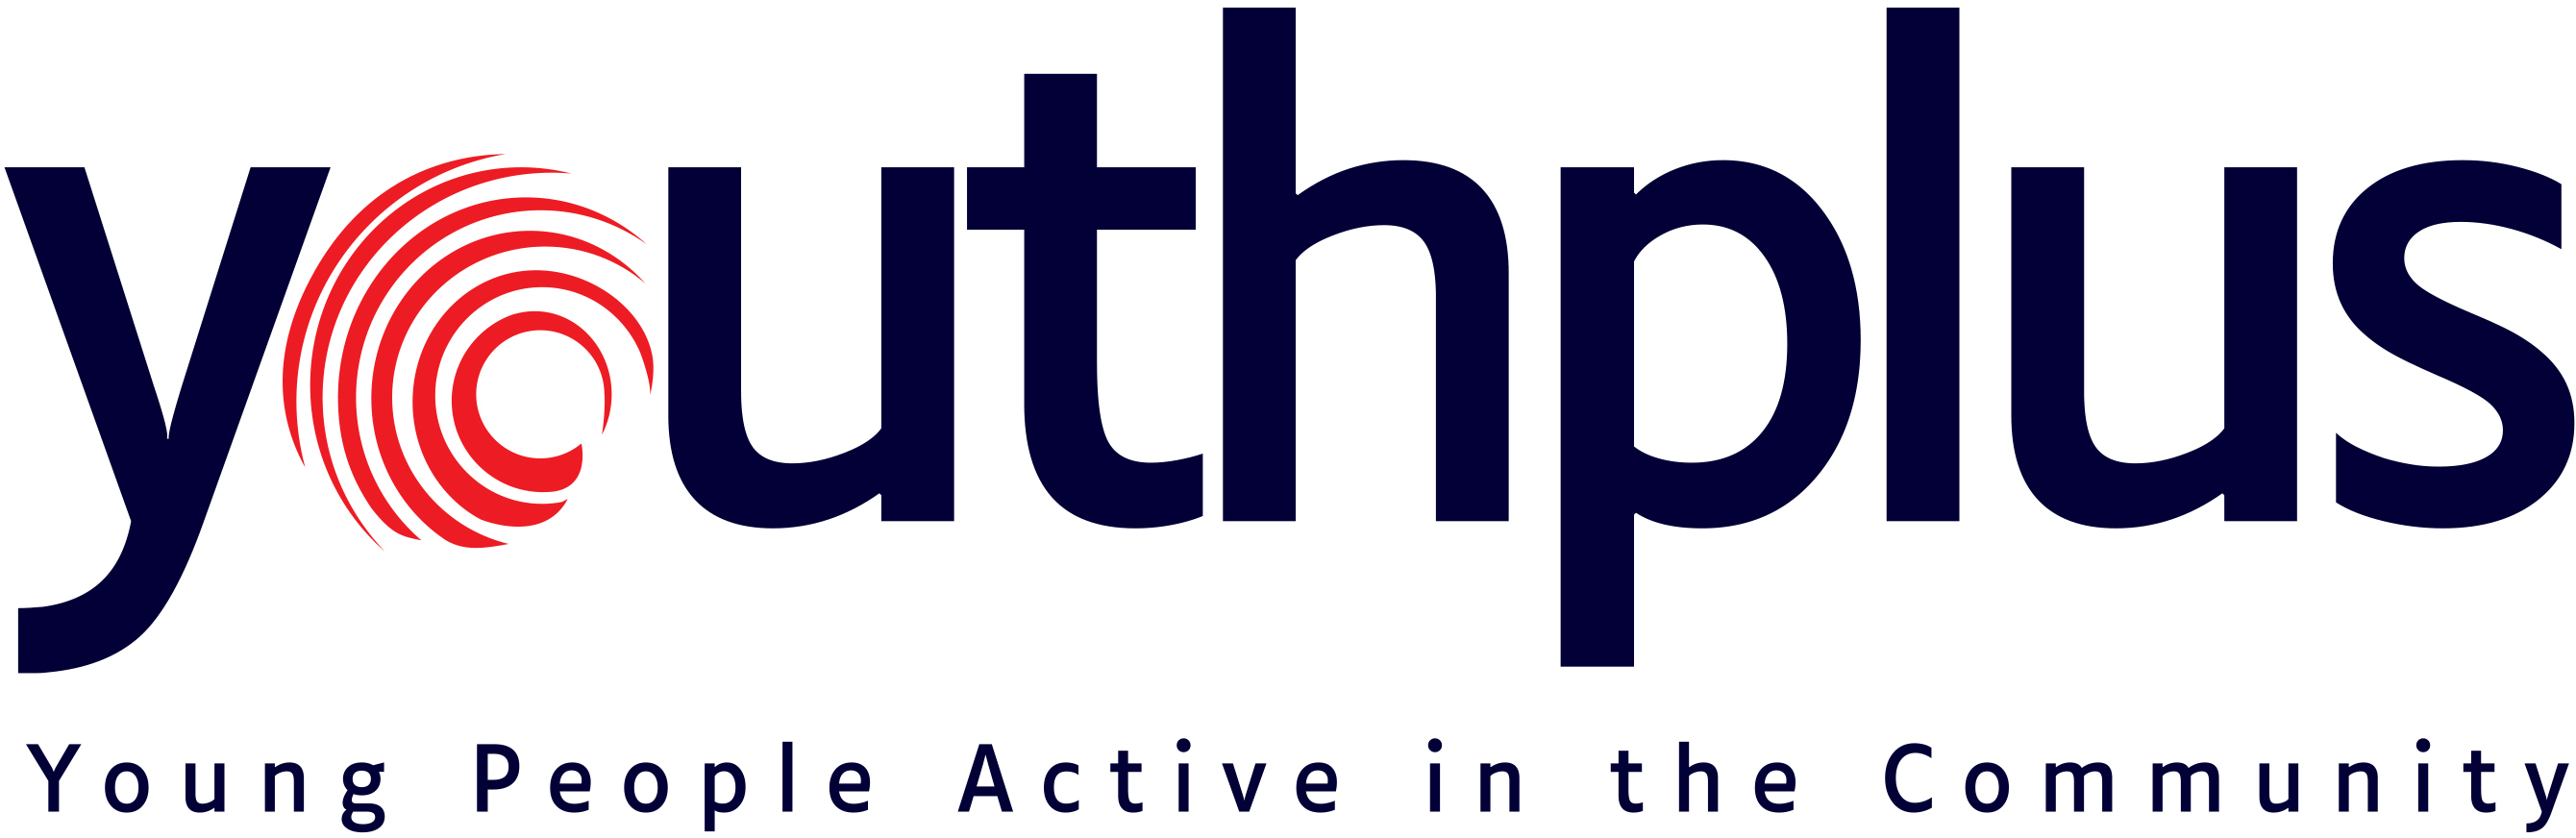 youthplus-logo